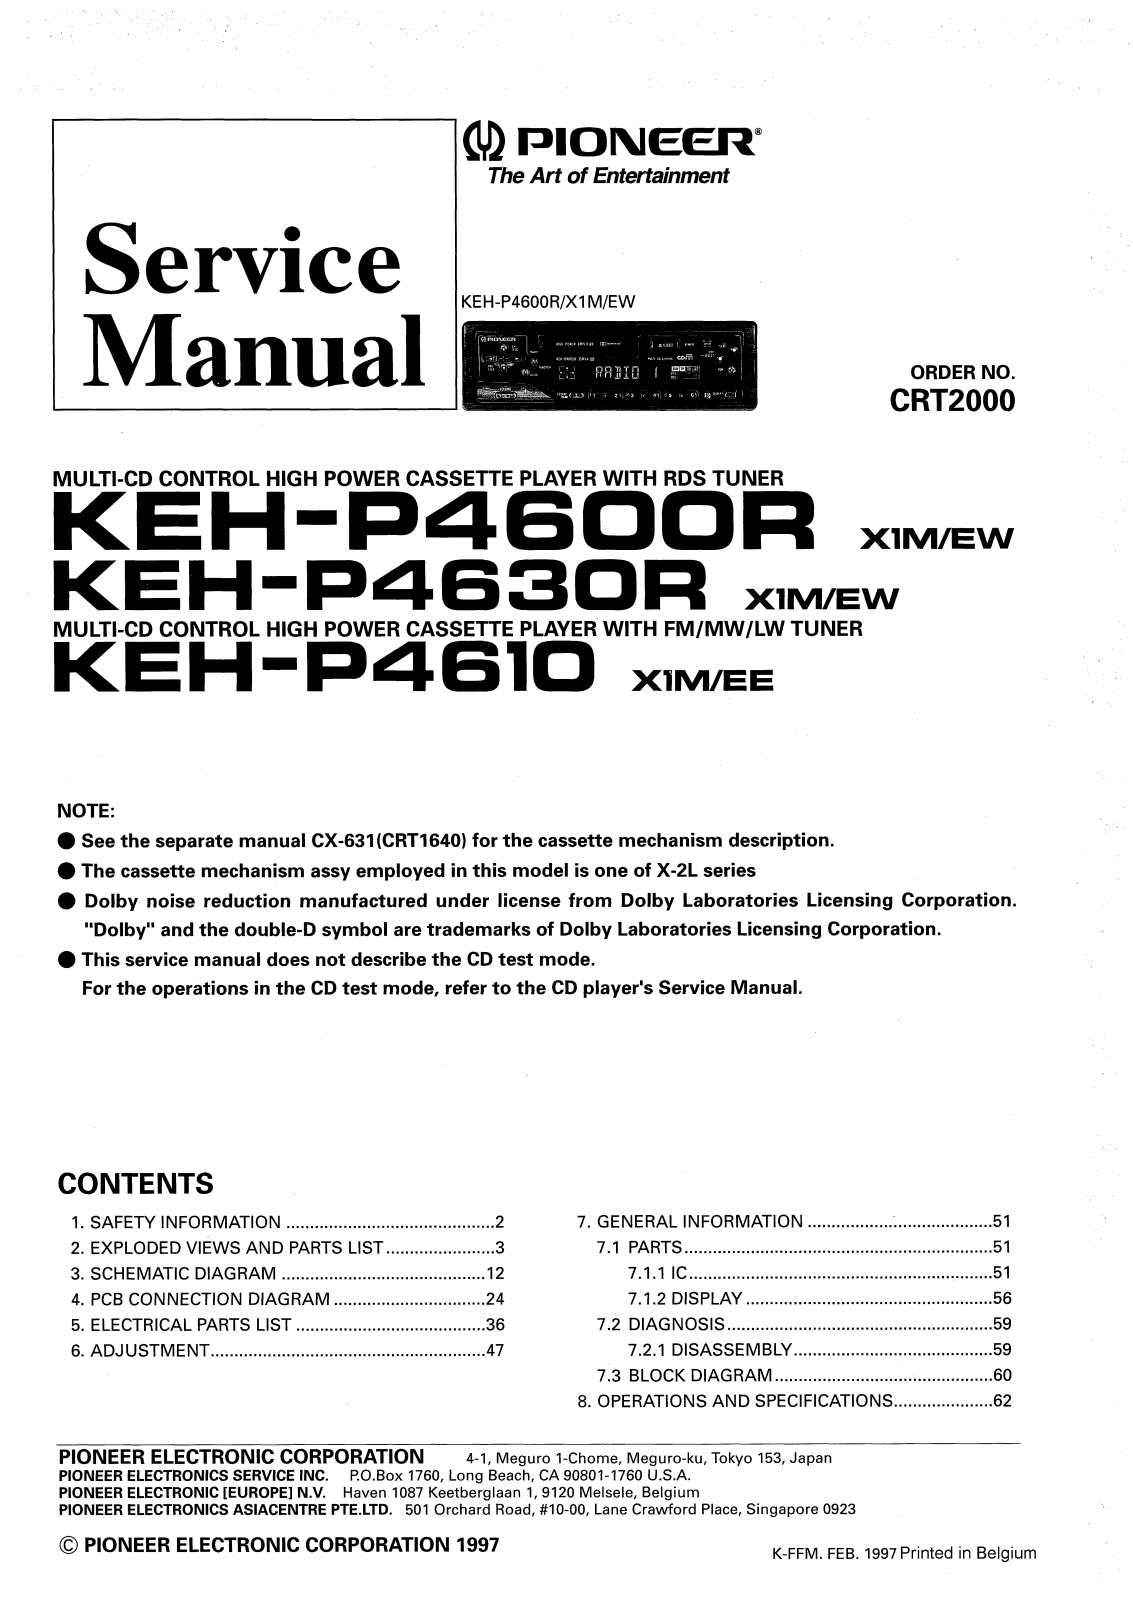 PIONEER KEH-P4600R, KEH-P4610, KEH- P4630R Service Manual